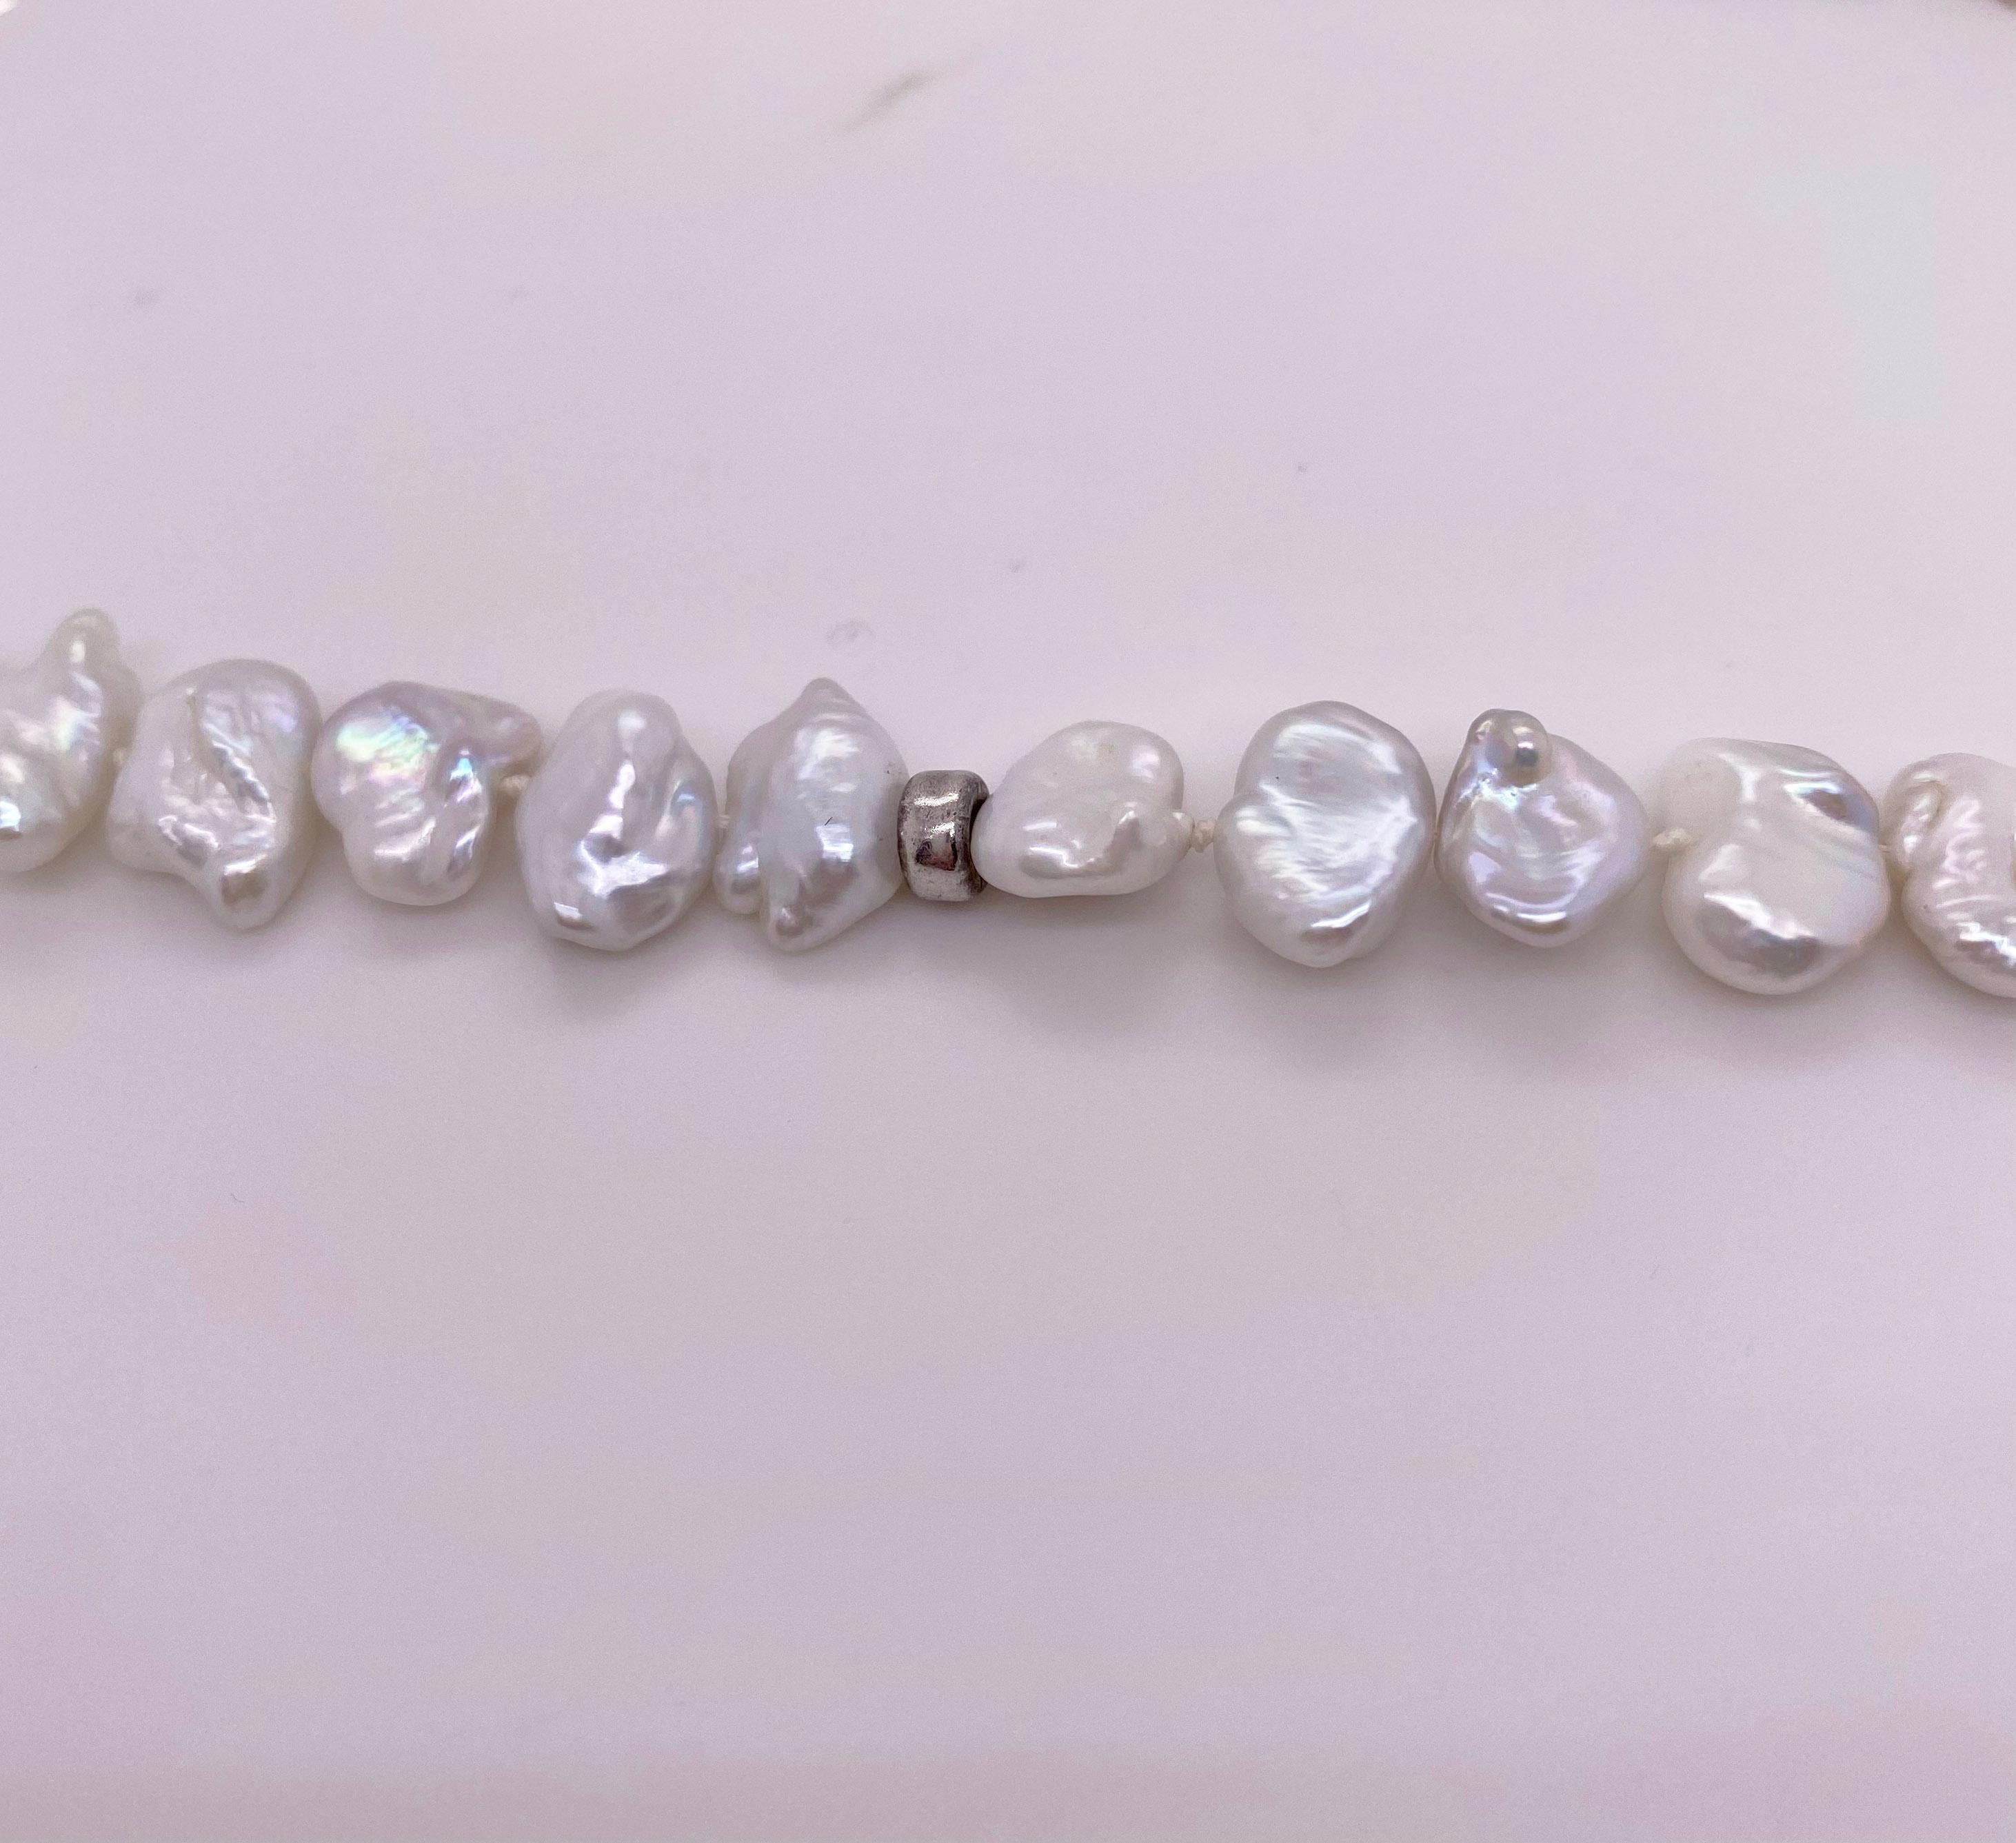 Ce collier de perles Keishi de culture biologique mesure 33 pouces de long et chaque perle est d'une magnifique couleur gris/blanc.  Ils sont parfaitement assortis. Le collier a  Les détails de ce magnifique collier sont indiqués ci-dessous